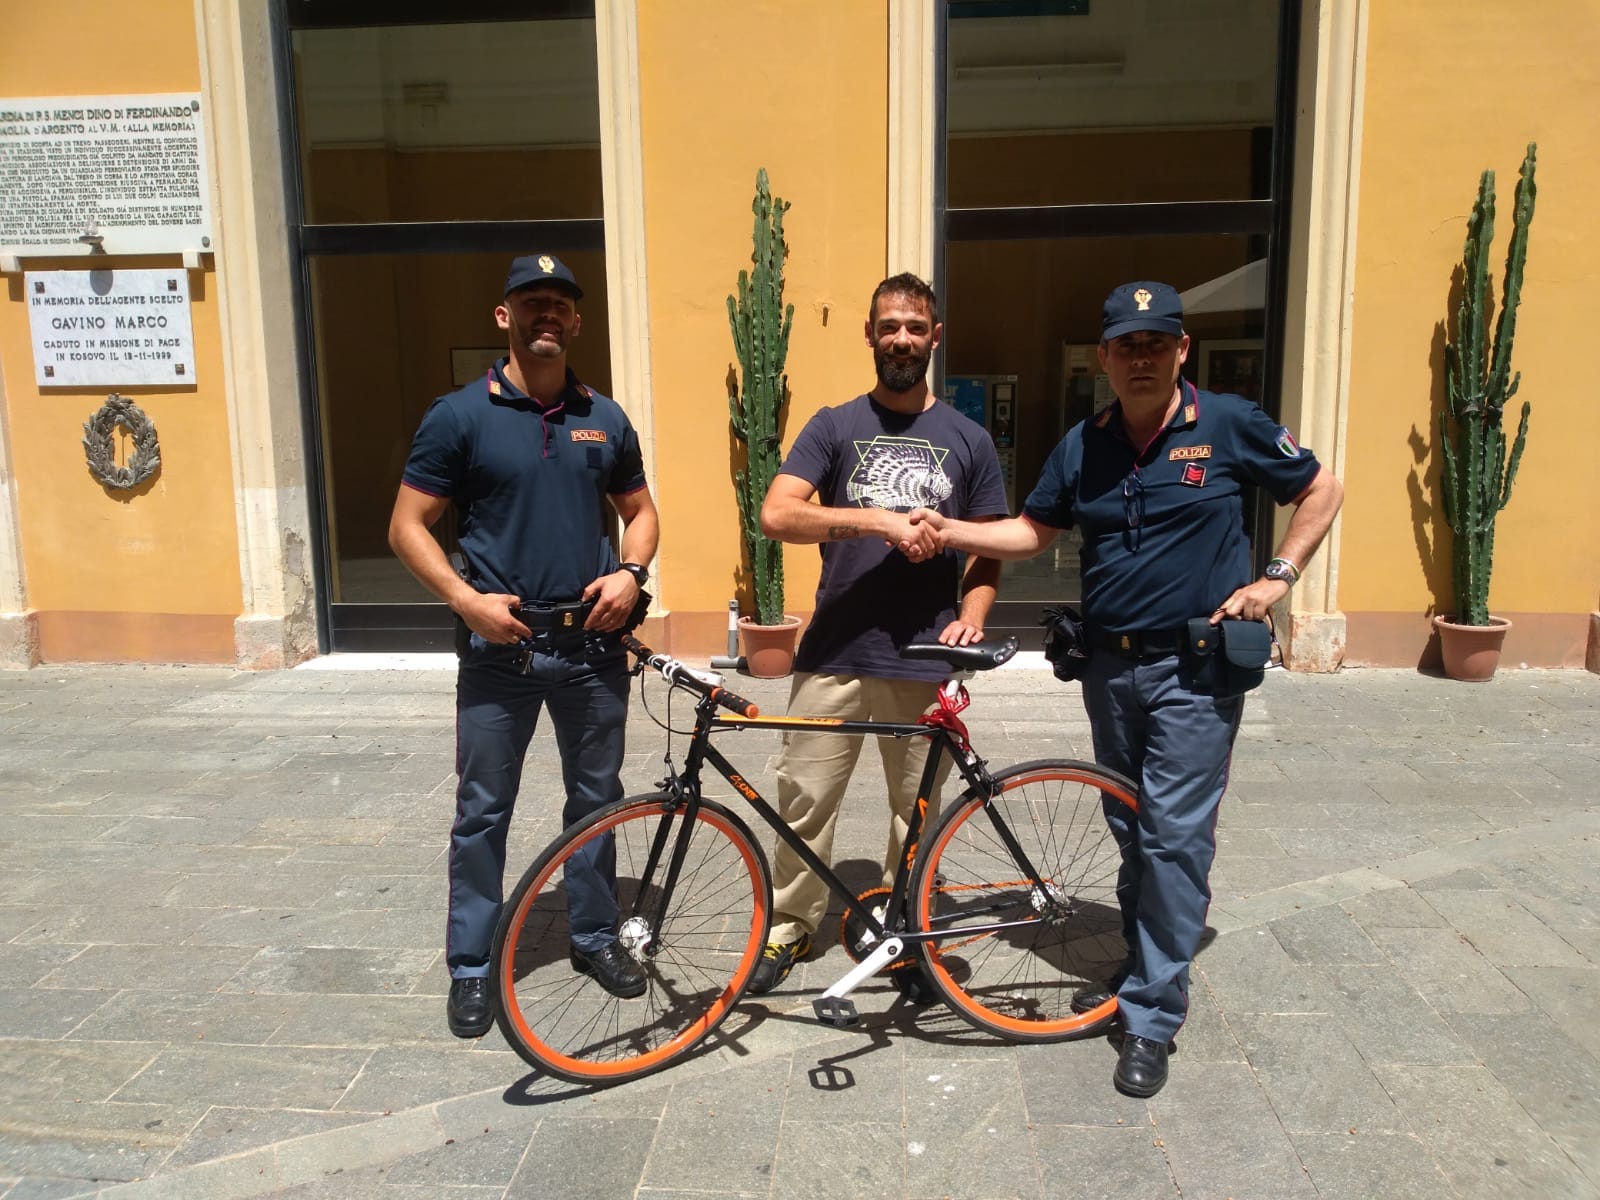 Imperia. In sella ad una bici rubata per le vie di Porto Maurizio. Polizia di Stato denuncia marocchino irregolare e restituisce la bici al legittimo proprietario.